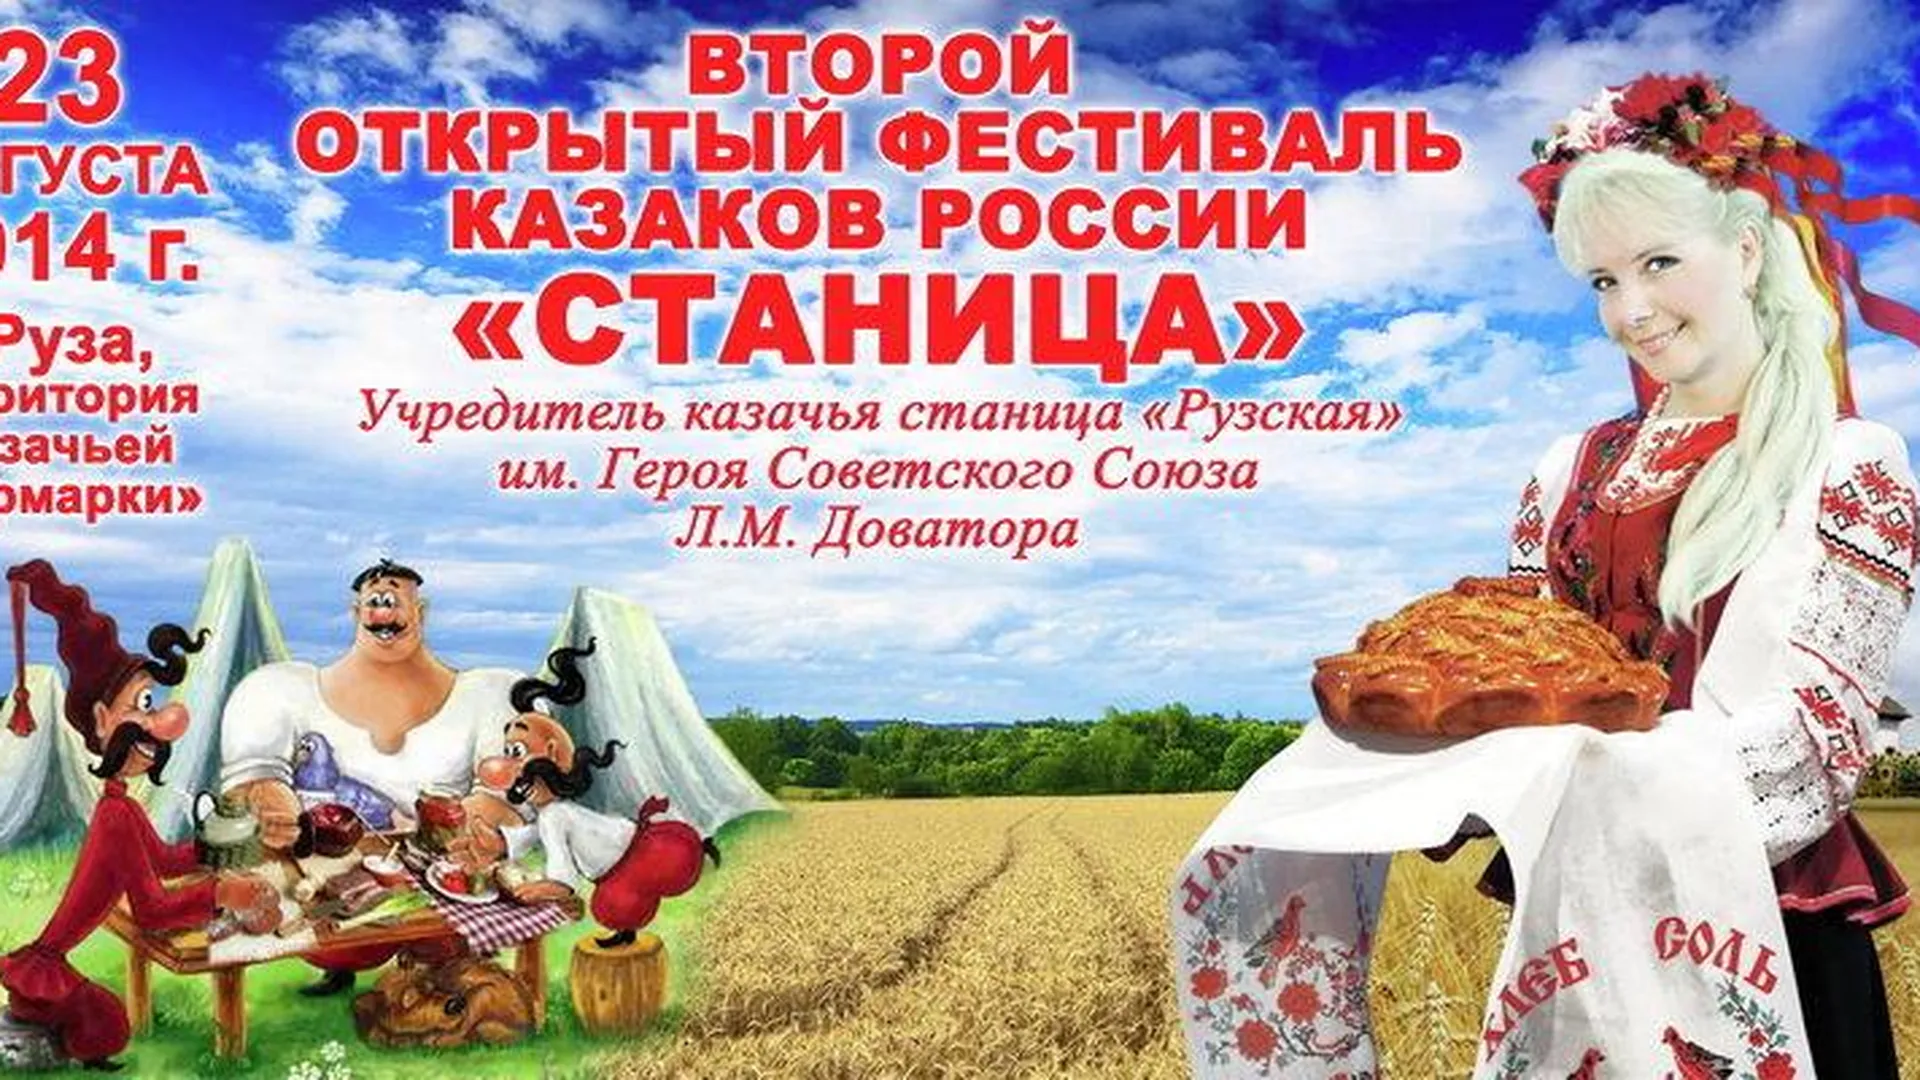 Фестиваль казачьего творчества пройдет в Рузе 23 августа